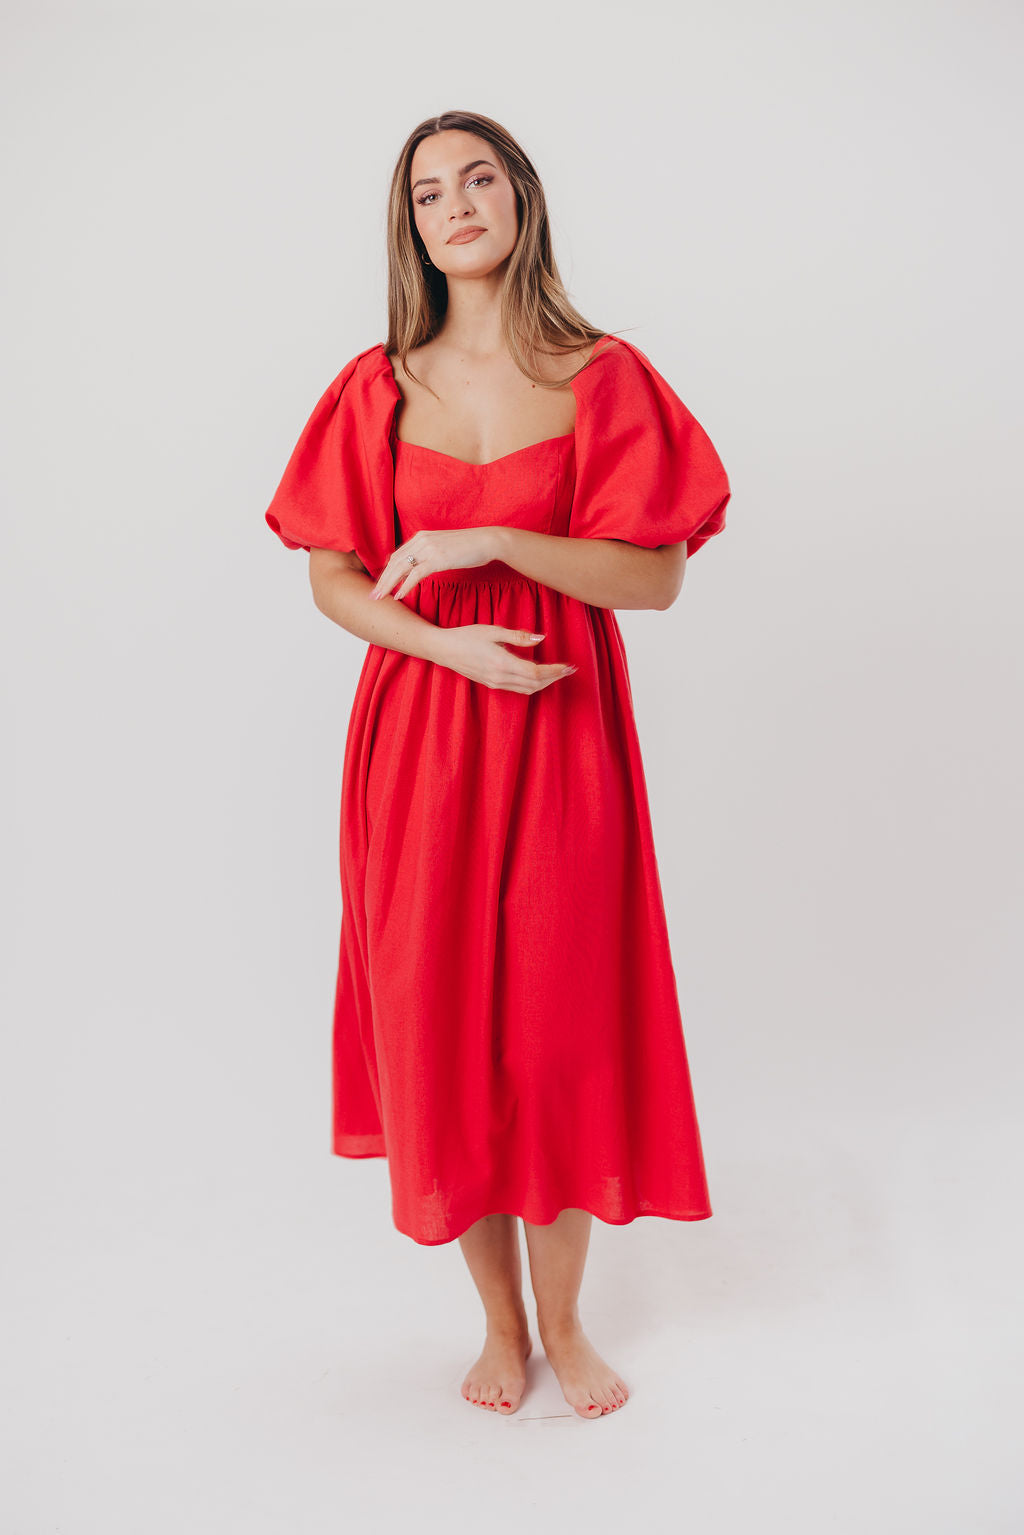 Hamilton Midi Dress in Red - Bump Friendly (S-XL) – Worth Collective